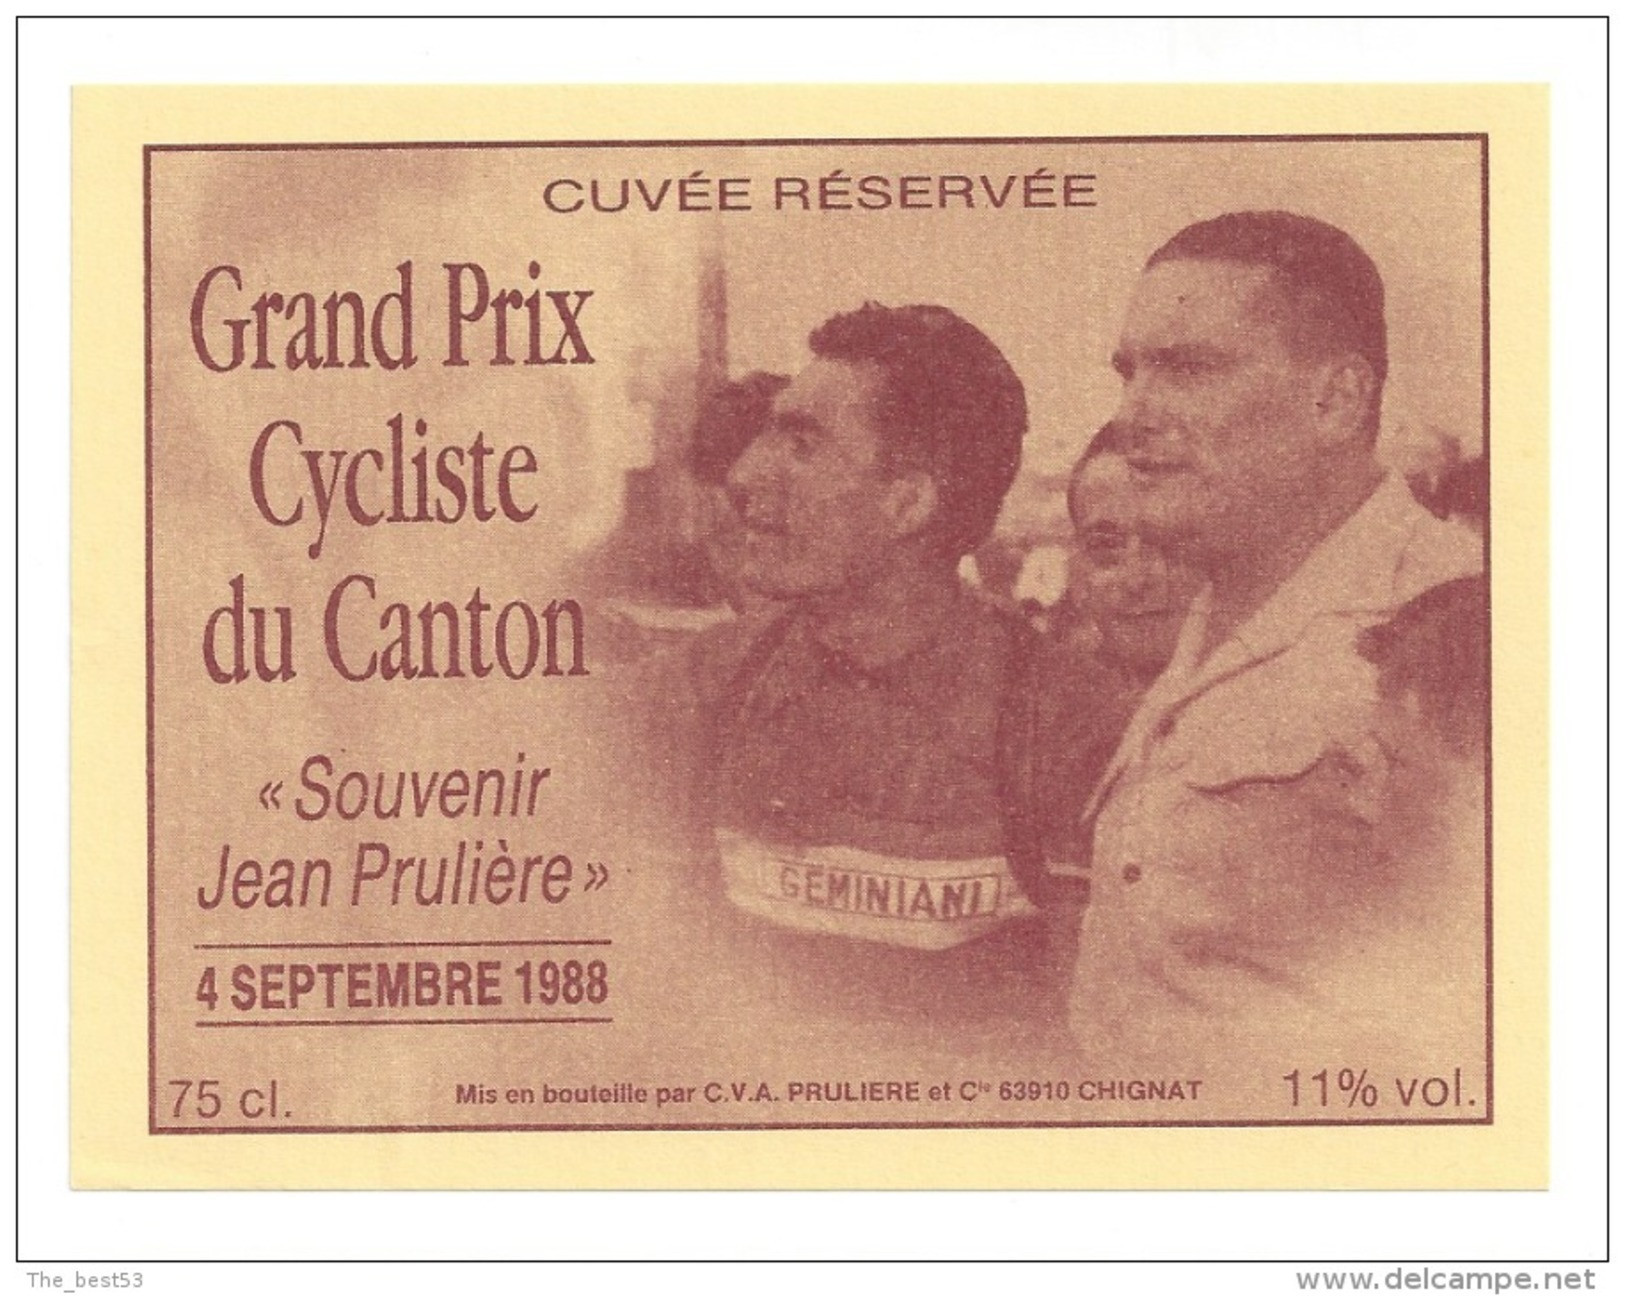 Etiquette De Vin - Cuvée Du Grand Prix Cycliste Du Canton 1988 - Souvenir Jean Prulière - CV A à Chignat (63) - Cyclisme - Cycling